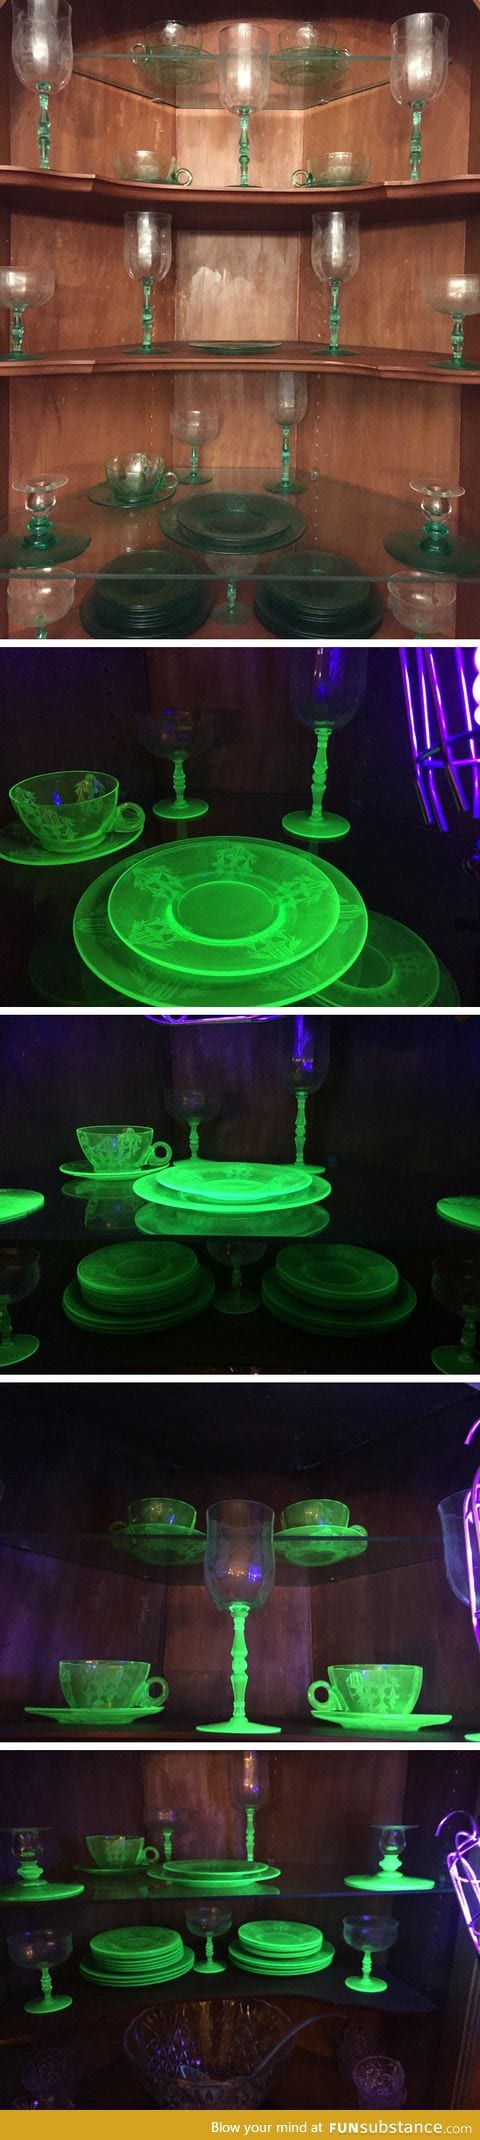 Uranium glassware that glows